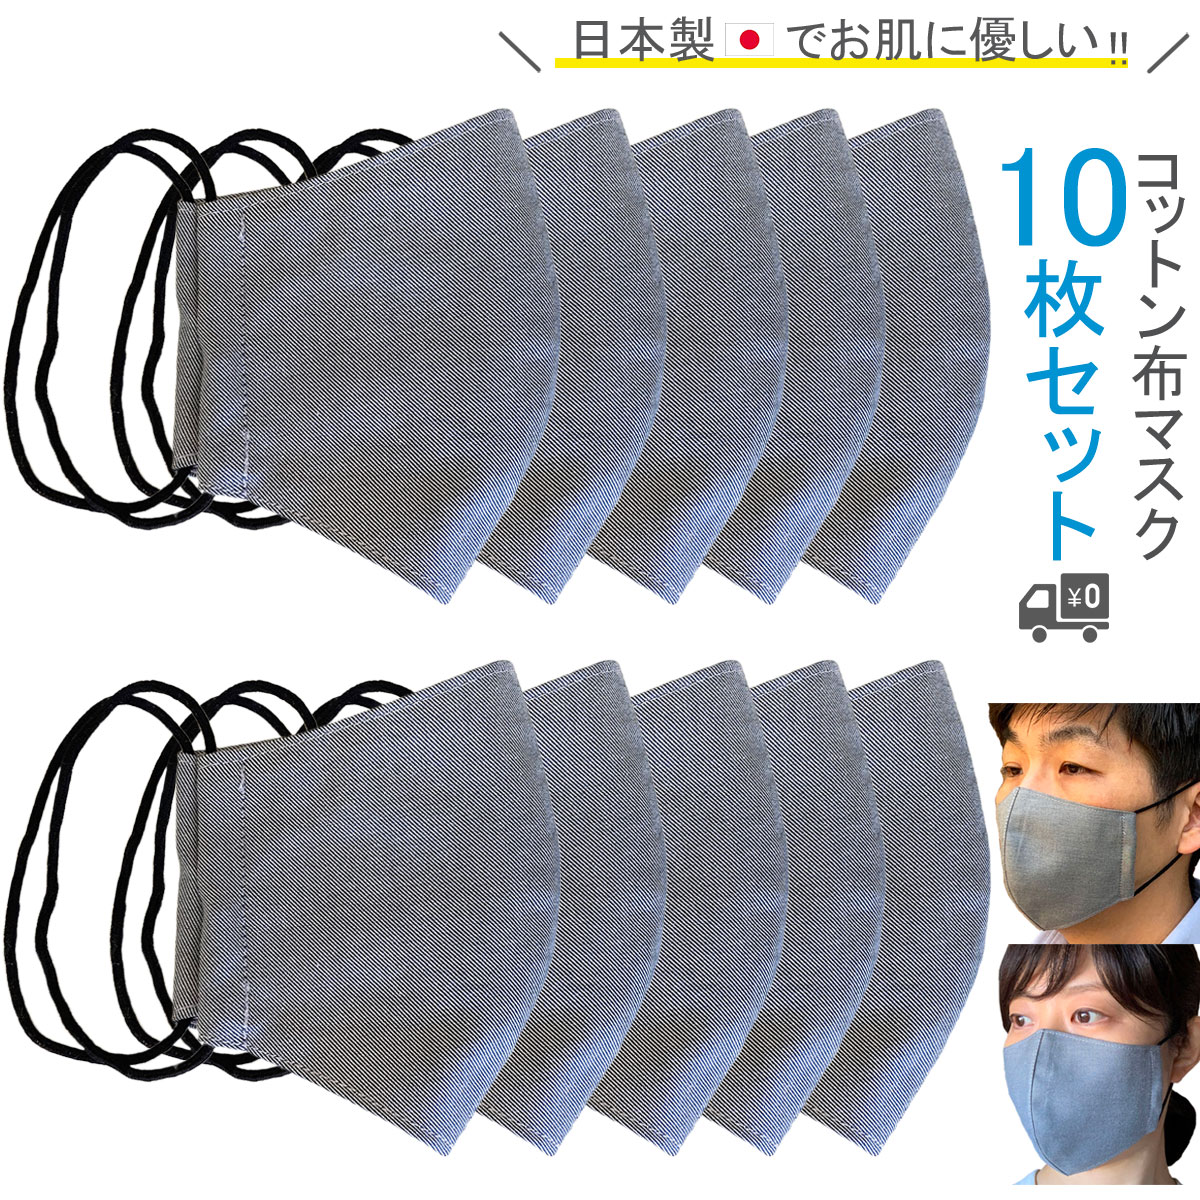 柔らかデニム生地10枚セット♪不織布マスクがつらい方にぜひ。皮脂やお化粧汚れなどが気になりにくく、コットン生地でお肌にも優しい日本製・布マスクです。洗って繰り返し使用可能。